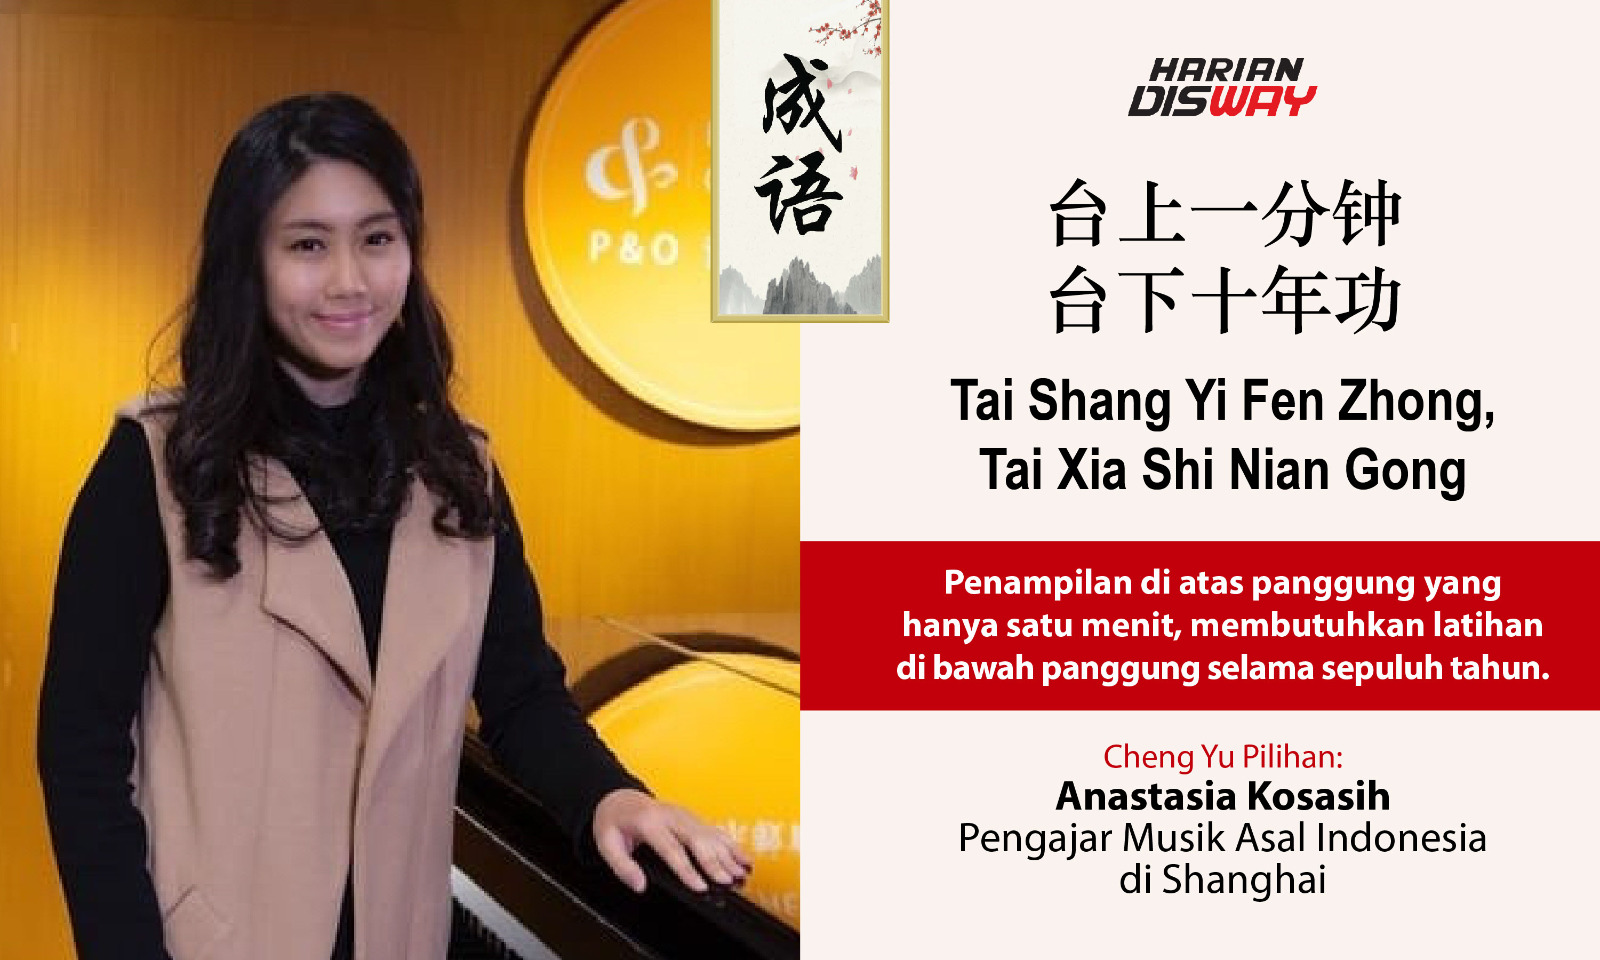 Cheng Yu Pilihan Pengajar Musik Asal Indonesia di Shanghai Anastasia Kosasih Tai Shang Yi Fen Zhong, Tai Xia Shi Nian Gong